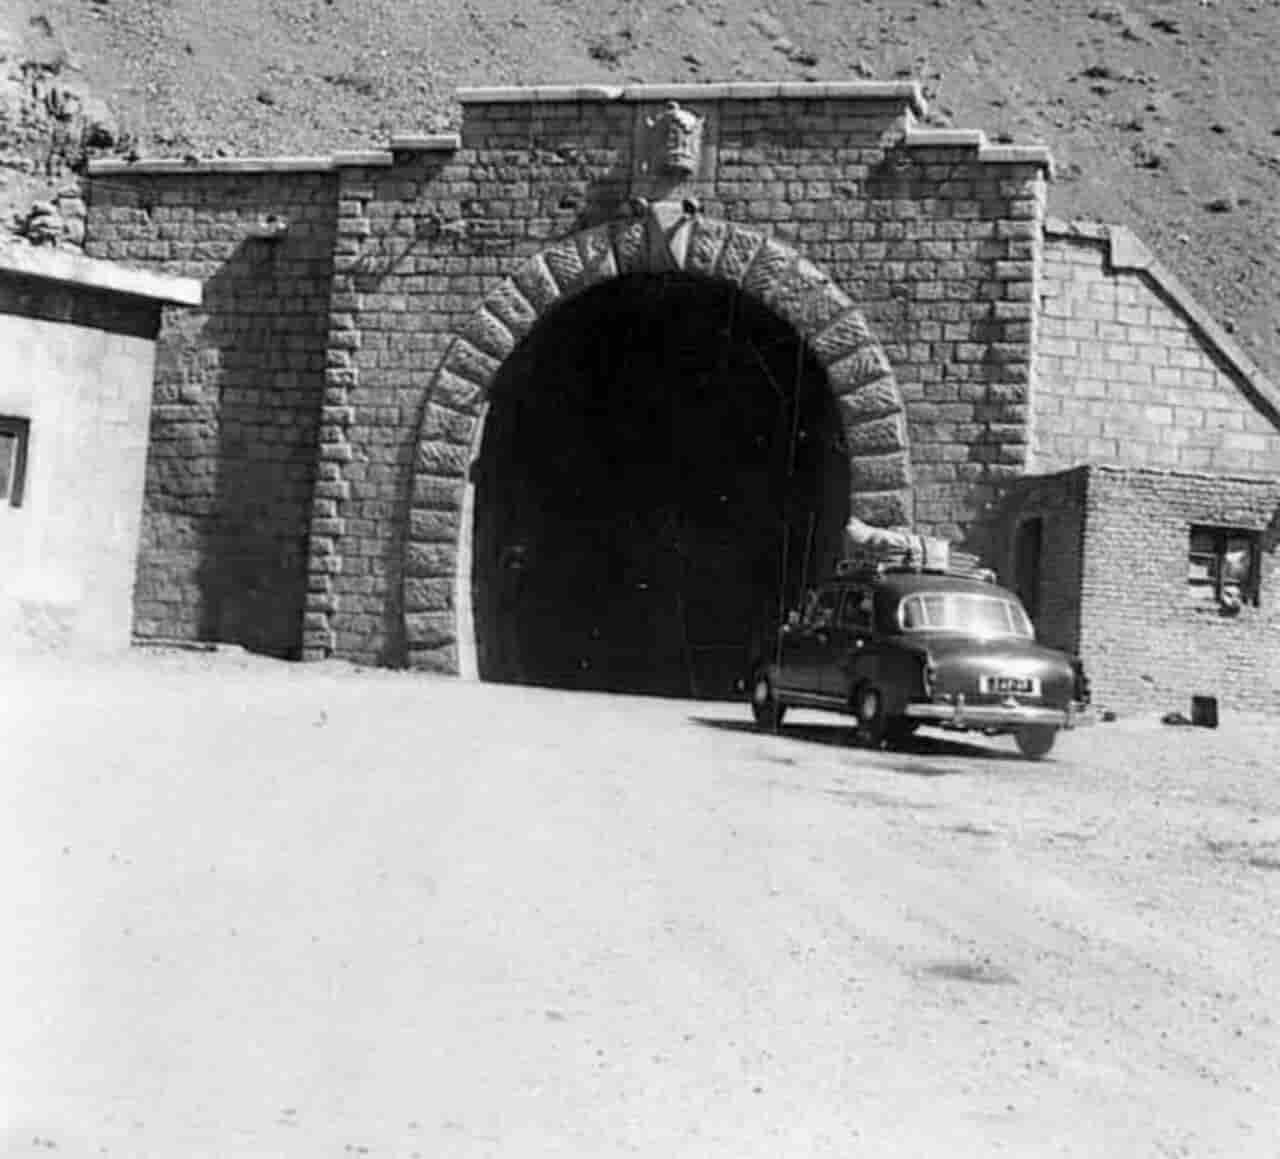  ورودی تونل کندوان سال ۱۳۳۰